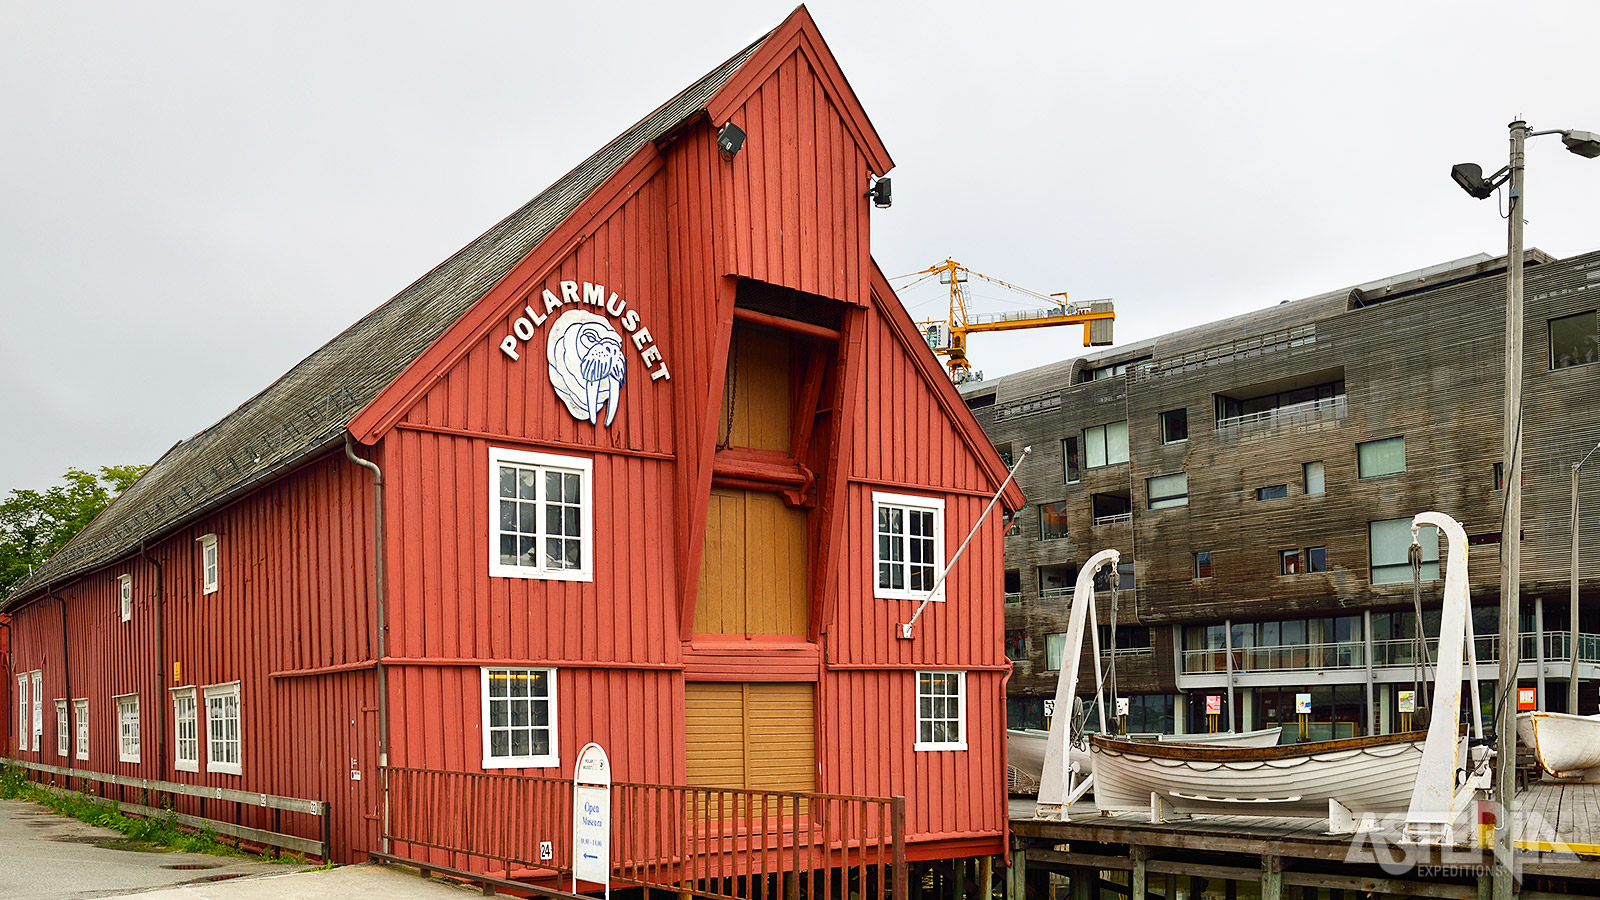 Ontdek de boeiende geschiedenis, cultuur en maritiem erfgoed van het Noordpoolgebied in het Polar Museum van Tromsø